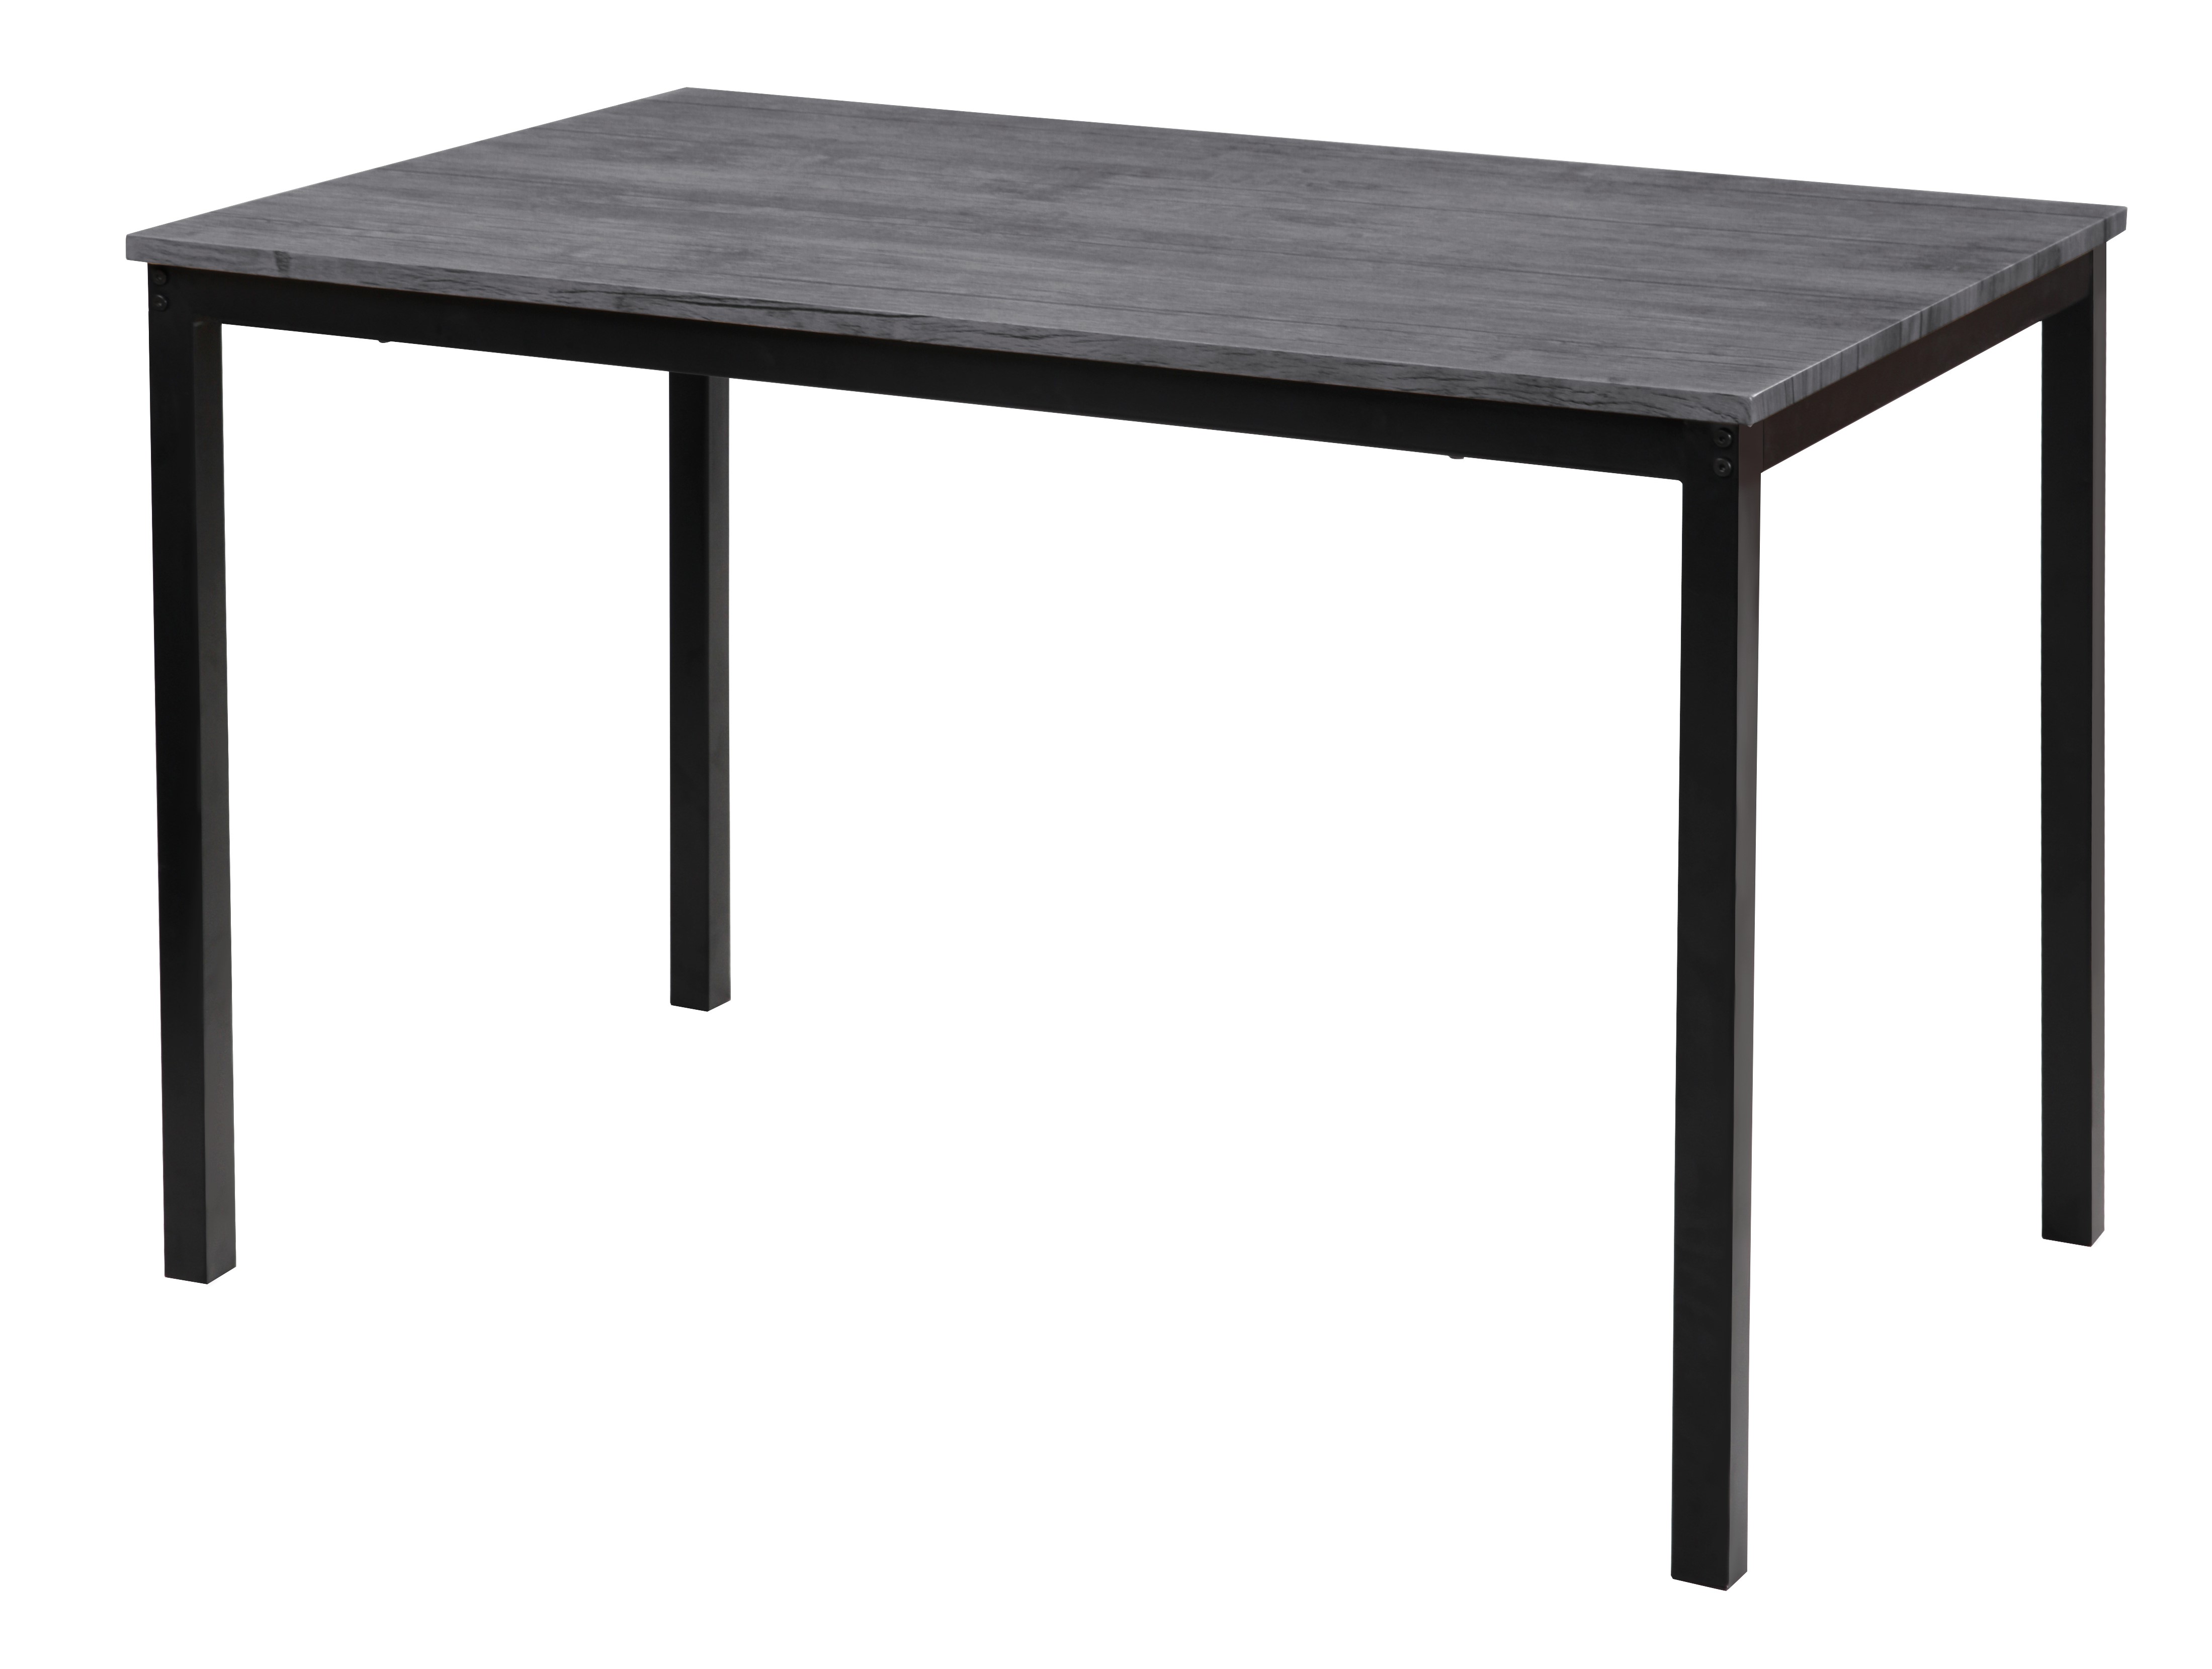 NORDLYS Newport matbord, rektangulärt - grått trä och metall